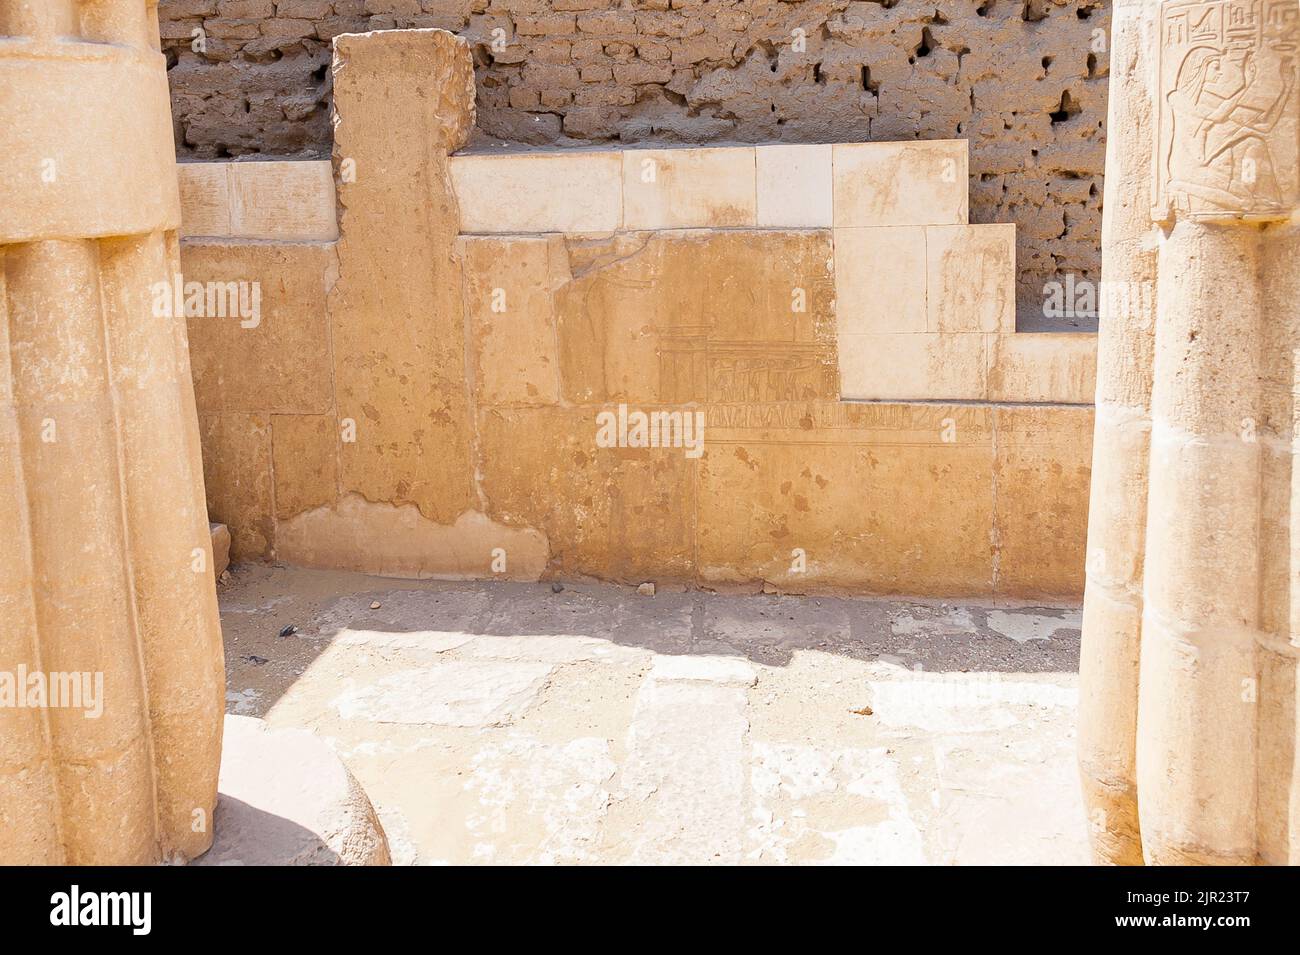 Egitto, Saqqara, tomba di Horemheb, parete sud della seconda corte, rimane di un muro di fase precedente, smantellato nell'ultima fase di costruzione. Foto Stock